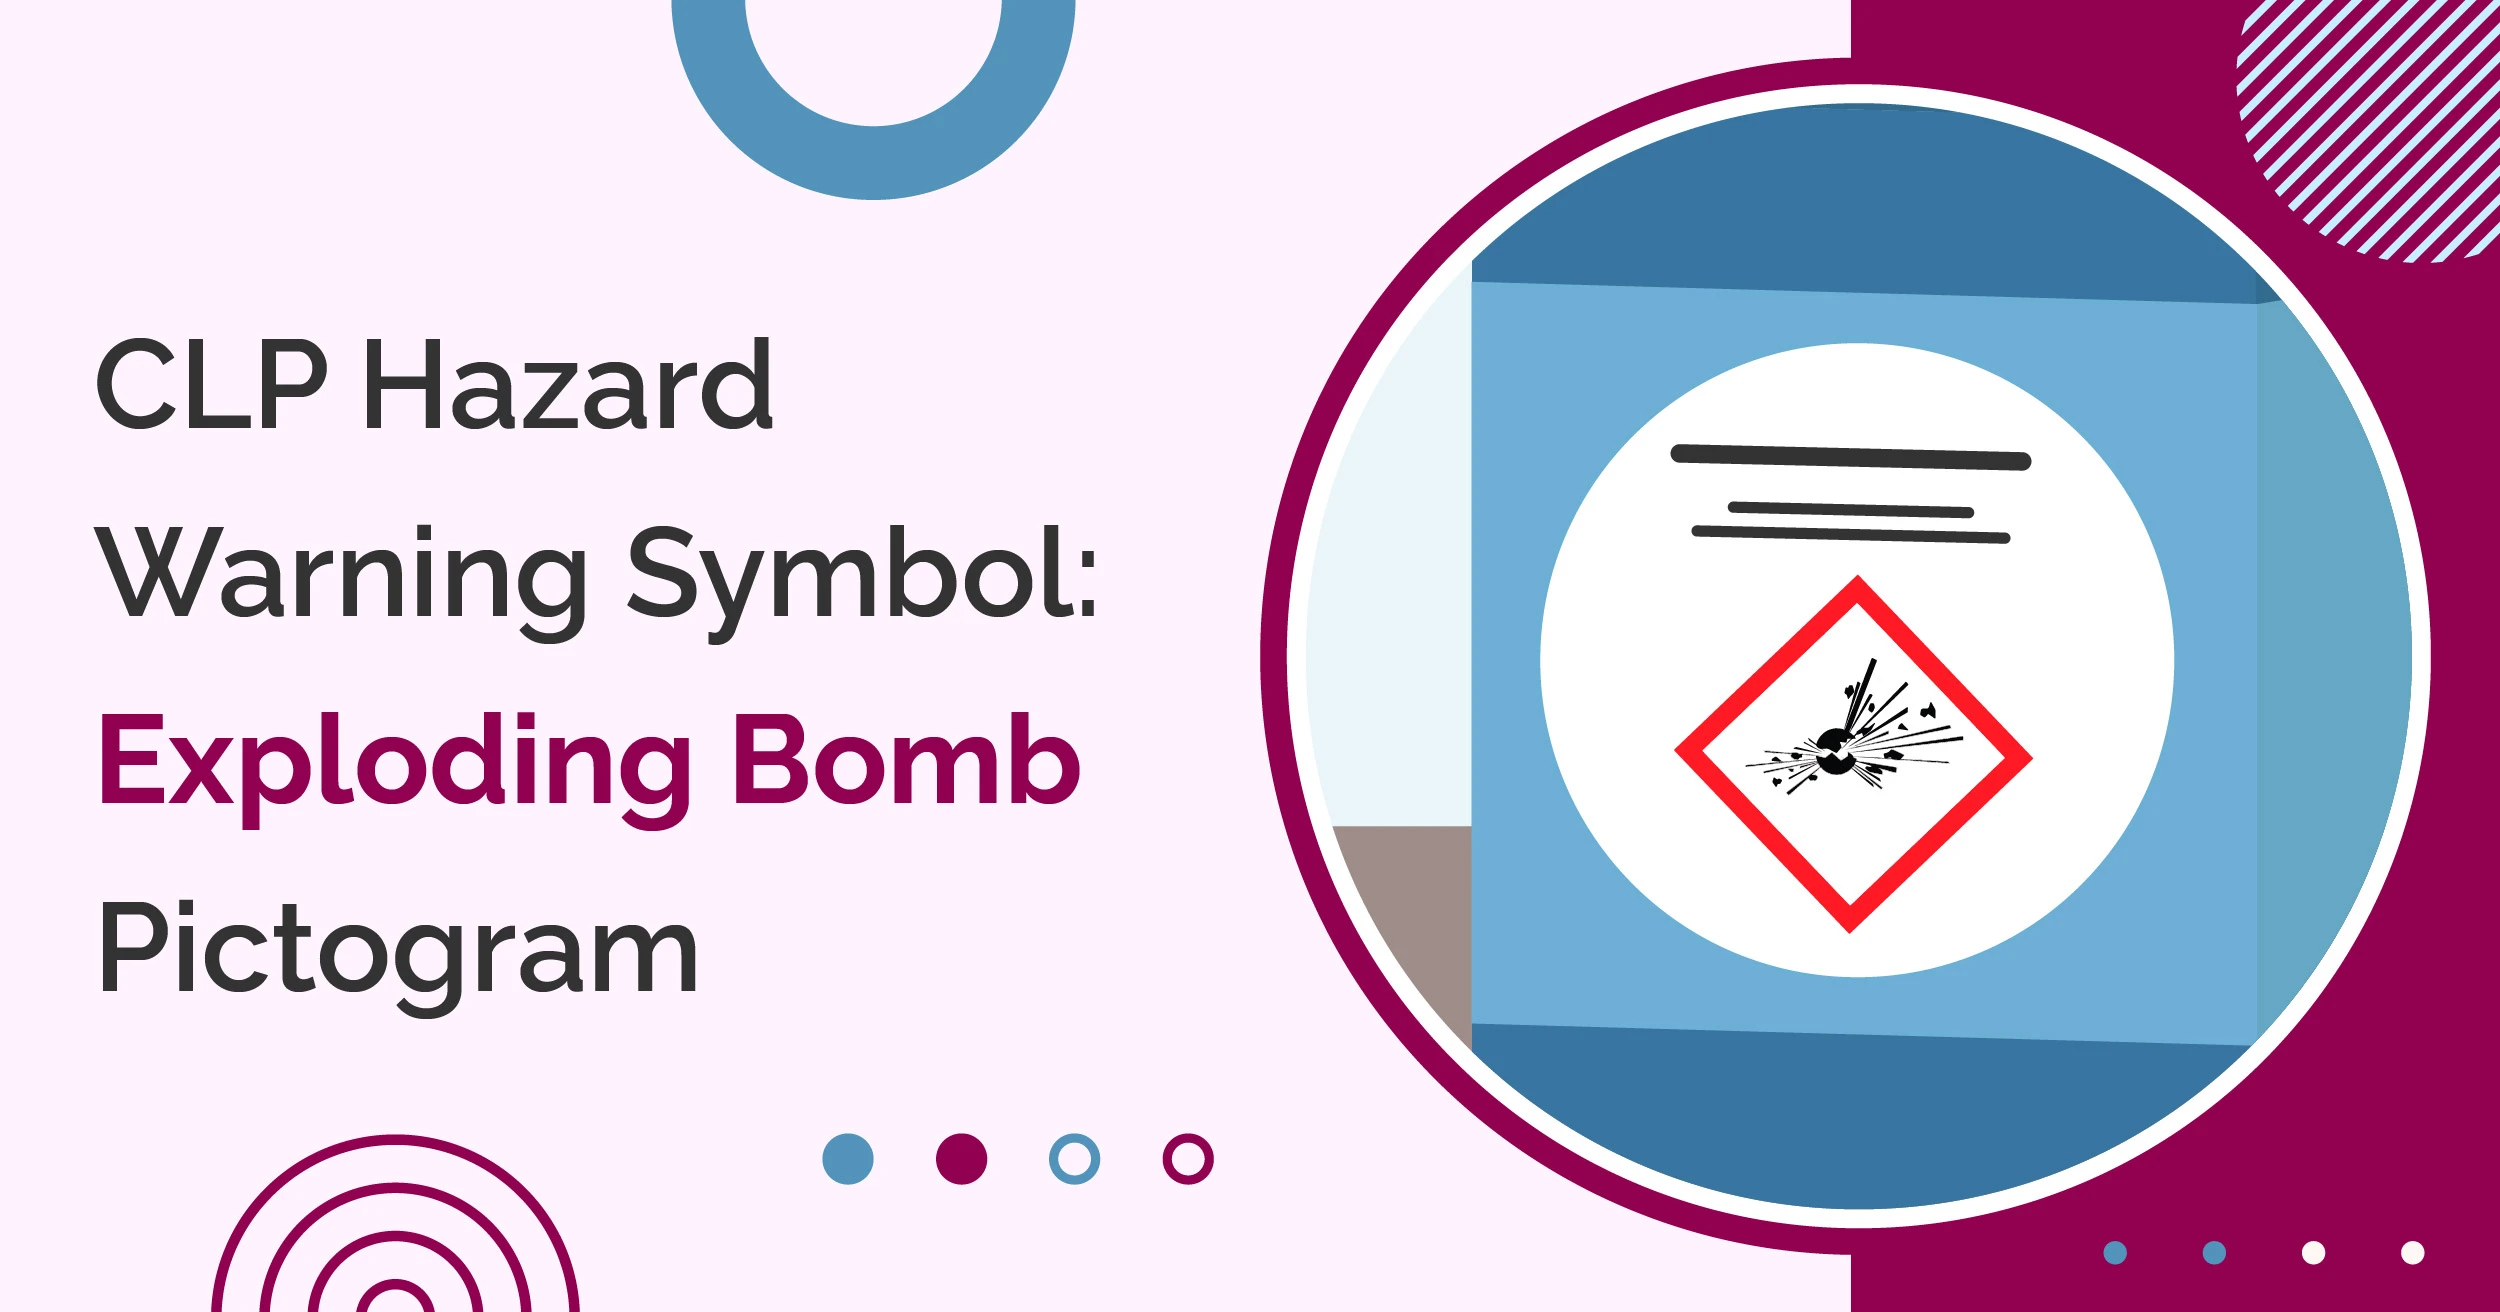 CLP Hazard Warning Symbol: Exploding Bomb Pictogram